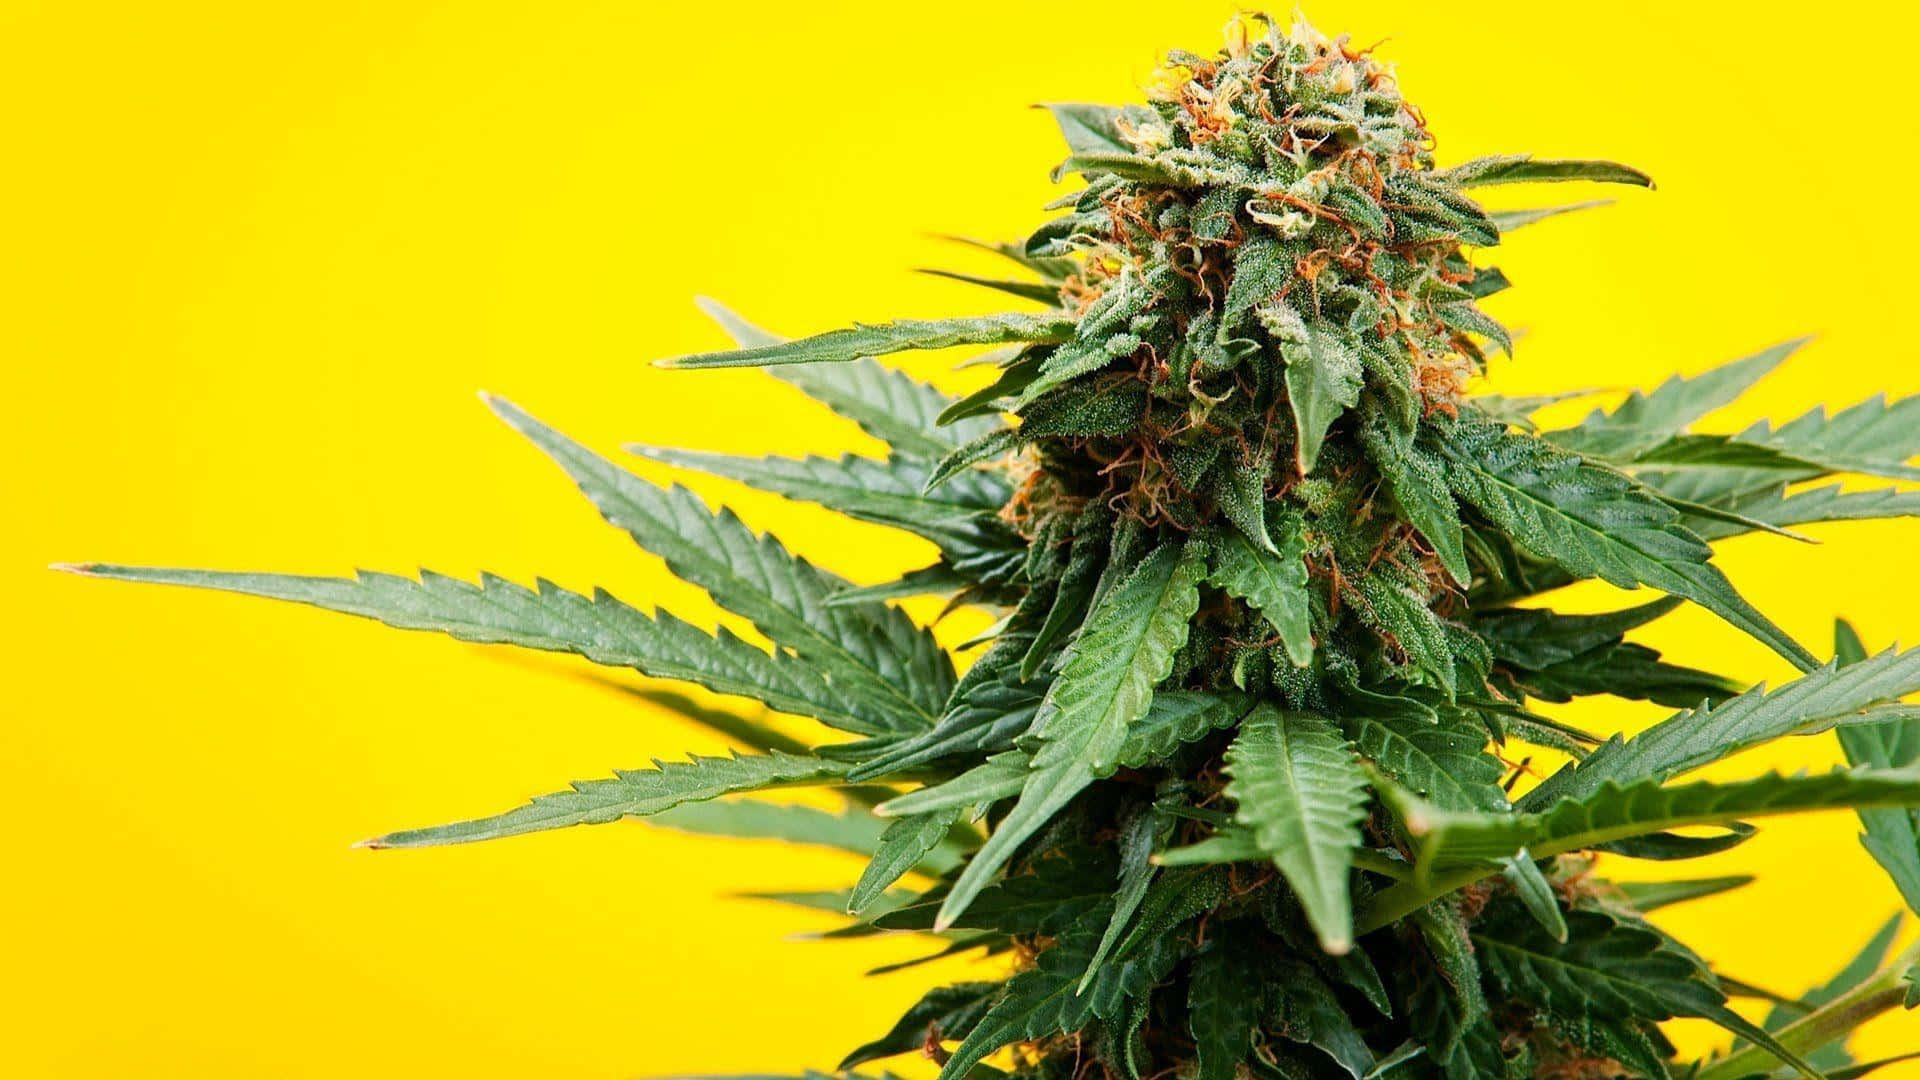 Einedankbare Ernte - Hochwertiges Cannabis Frisch Aus Dem Garten